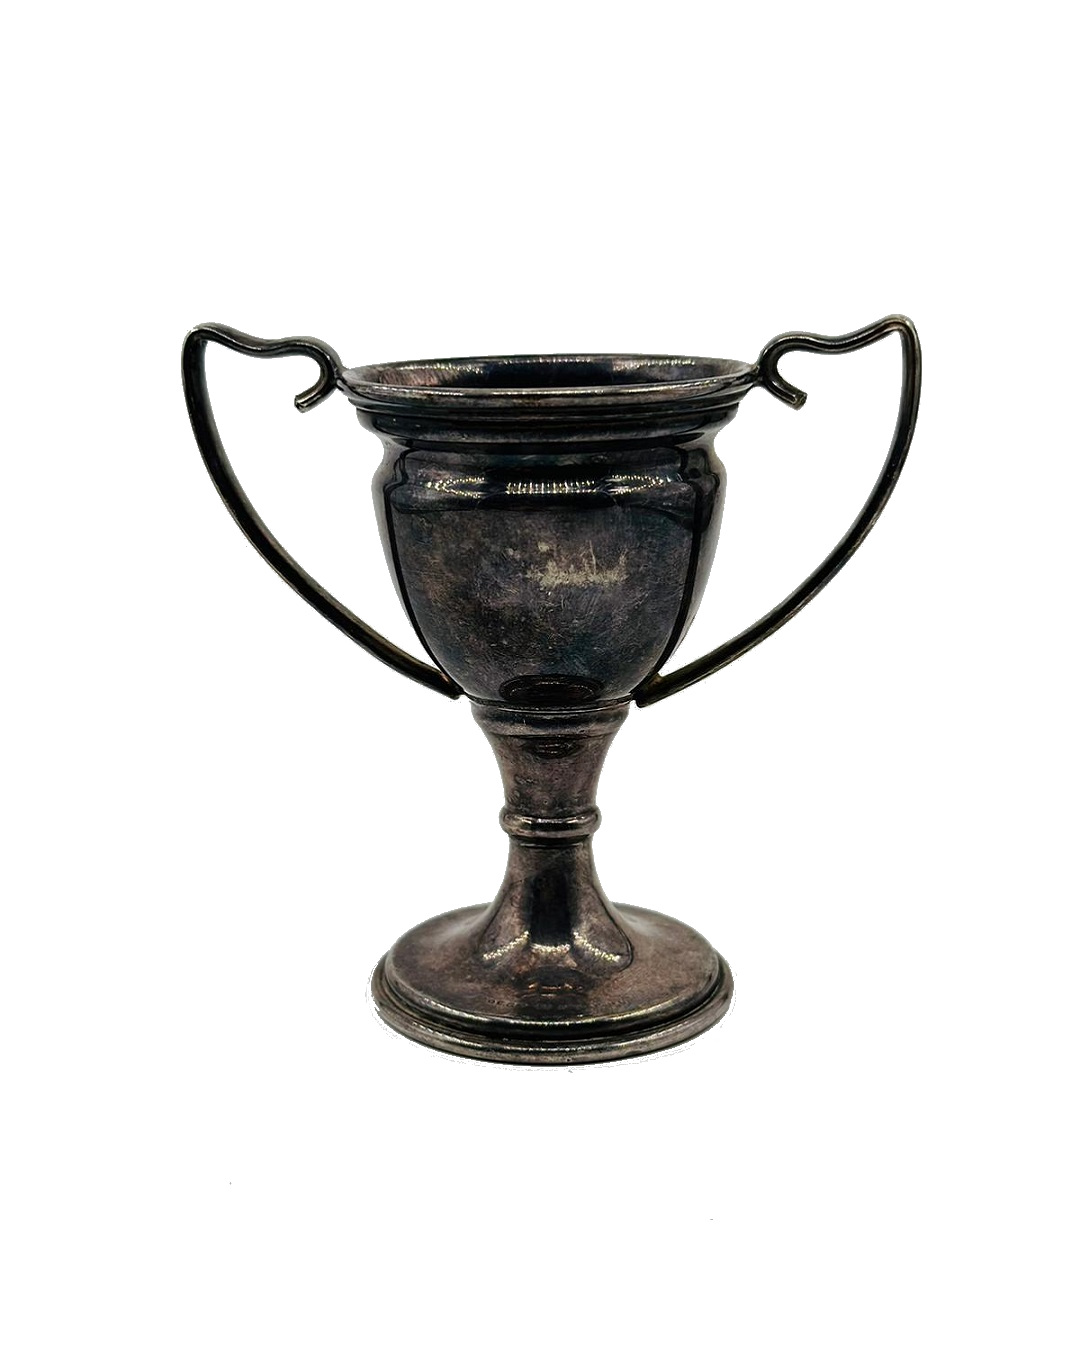 Vintage silverplate trophy